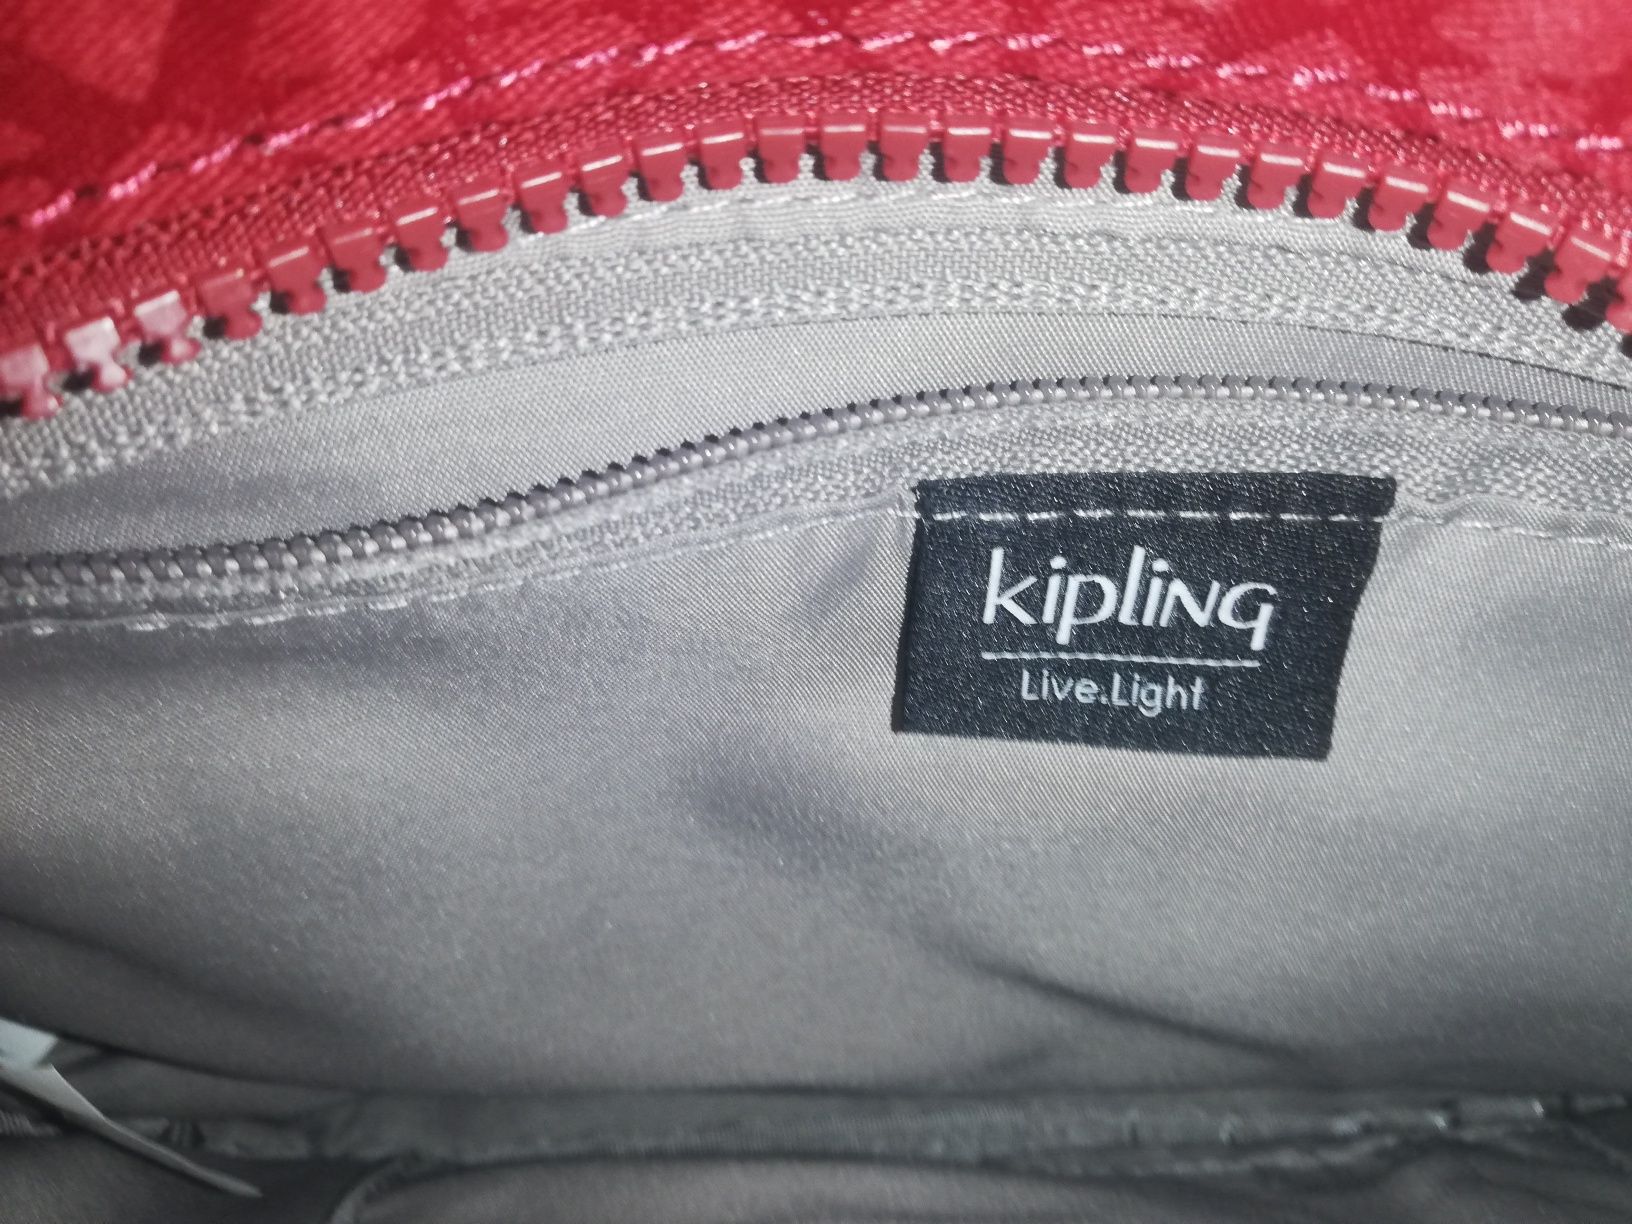 Bolsa tiracolo Kipling nova com etiqueta